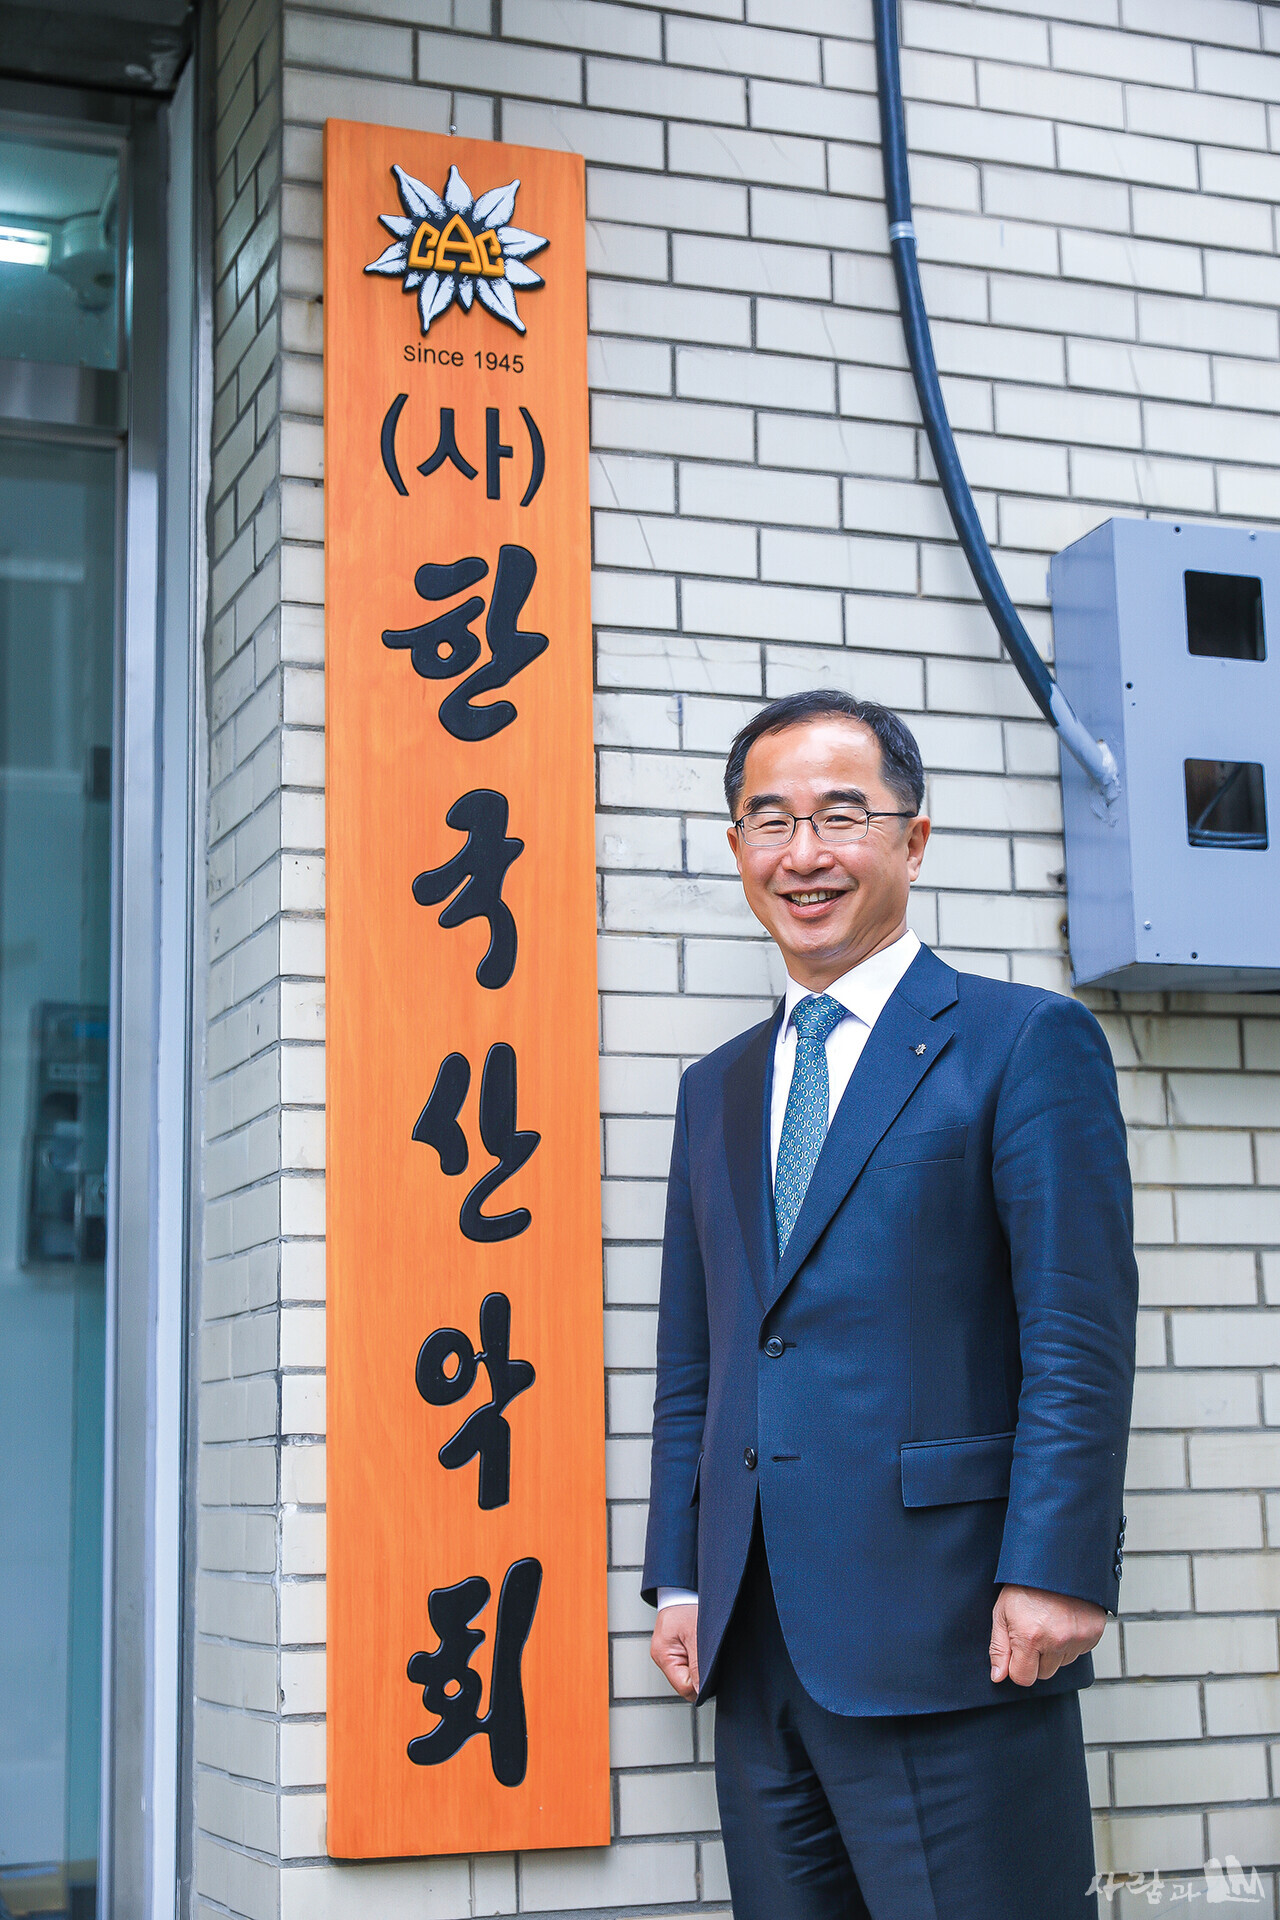 변기태 회장은 "한국산악회 회원들이 최초와 최대를 넘어서는 진정한 긍지를 가질 수 있도록 하겠다."고 밝혔다.